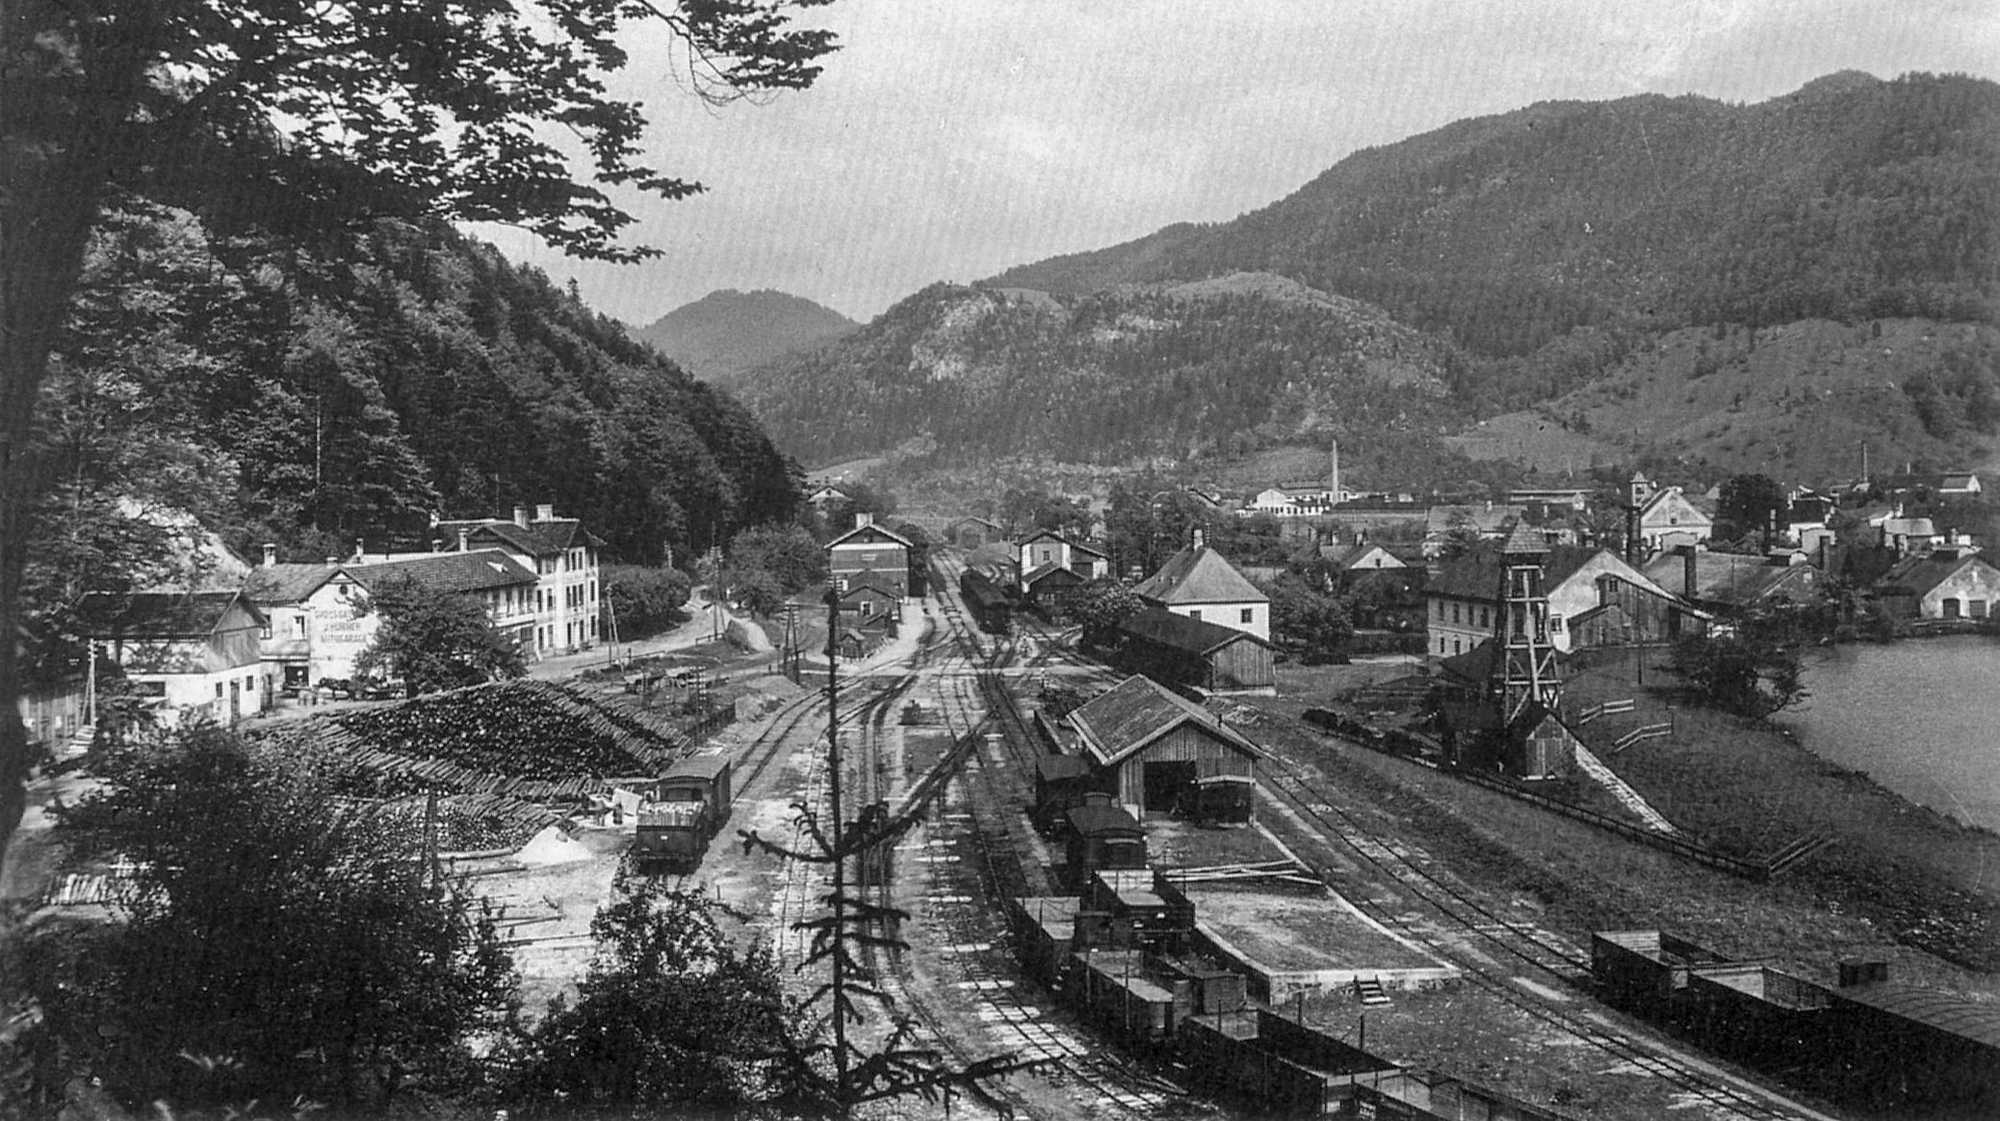 Der Spurwechselbahnhof Kienberg-Gaming um 1900: In Bildmitte steht die Umladehalle, im Hintergrund sind das Empfangsgebäude und der Lokschuppen zu erkennen.